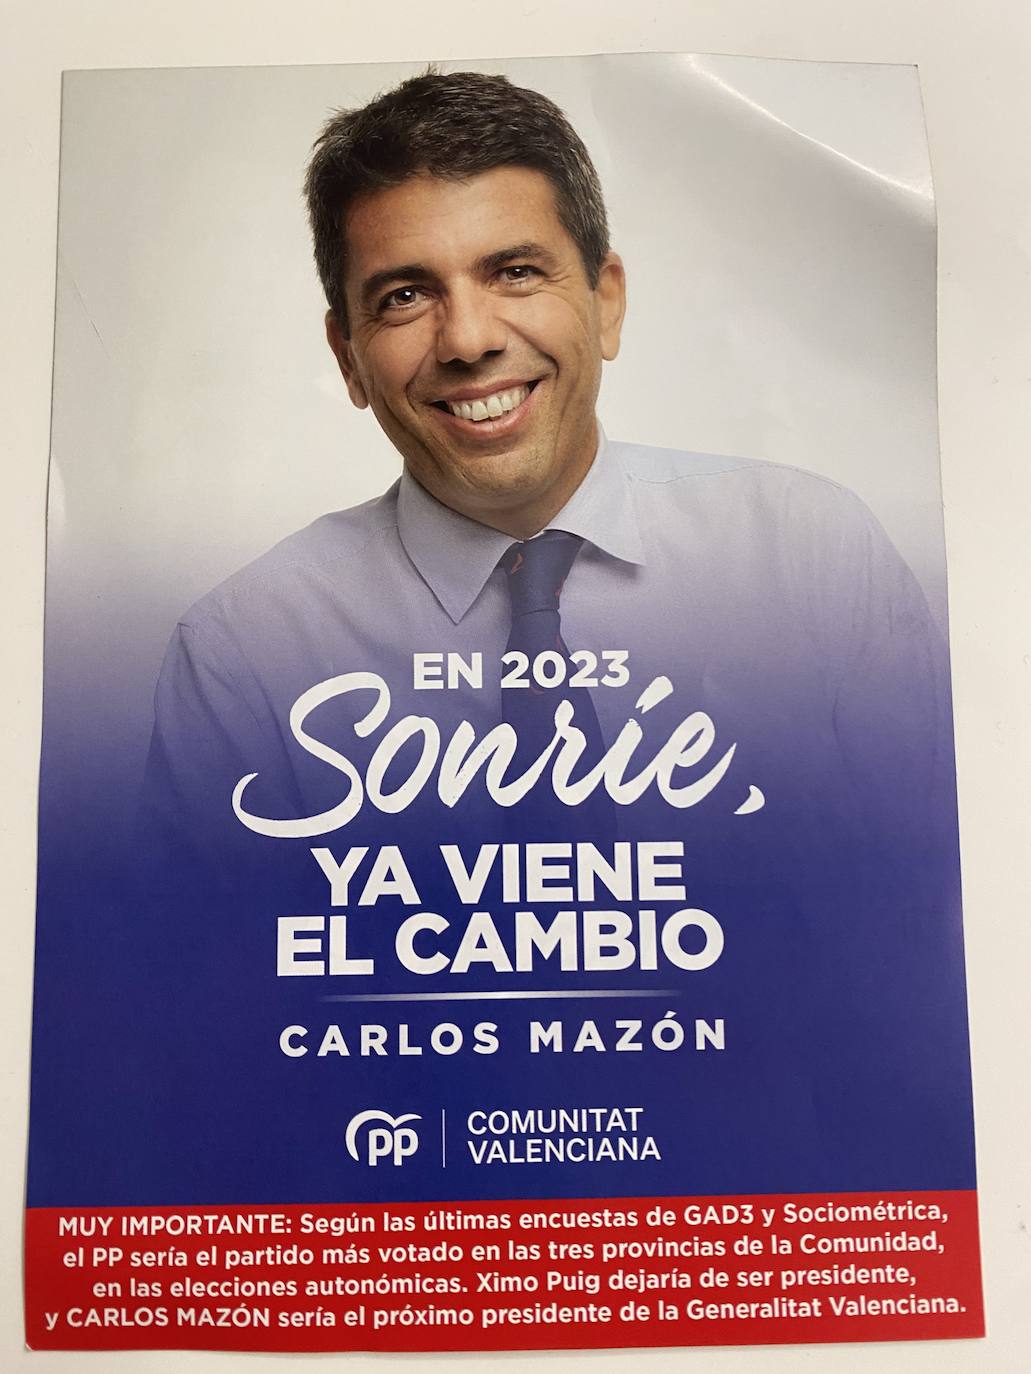 Imagen - Cara del folleto con el rostro de Carlos Mazón.